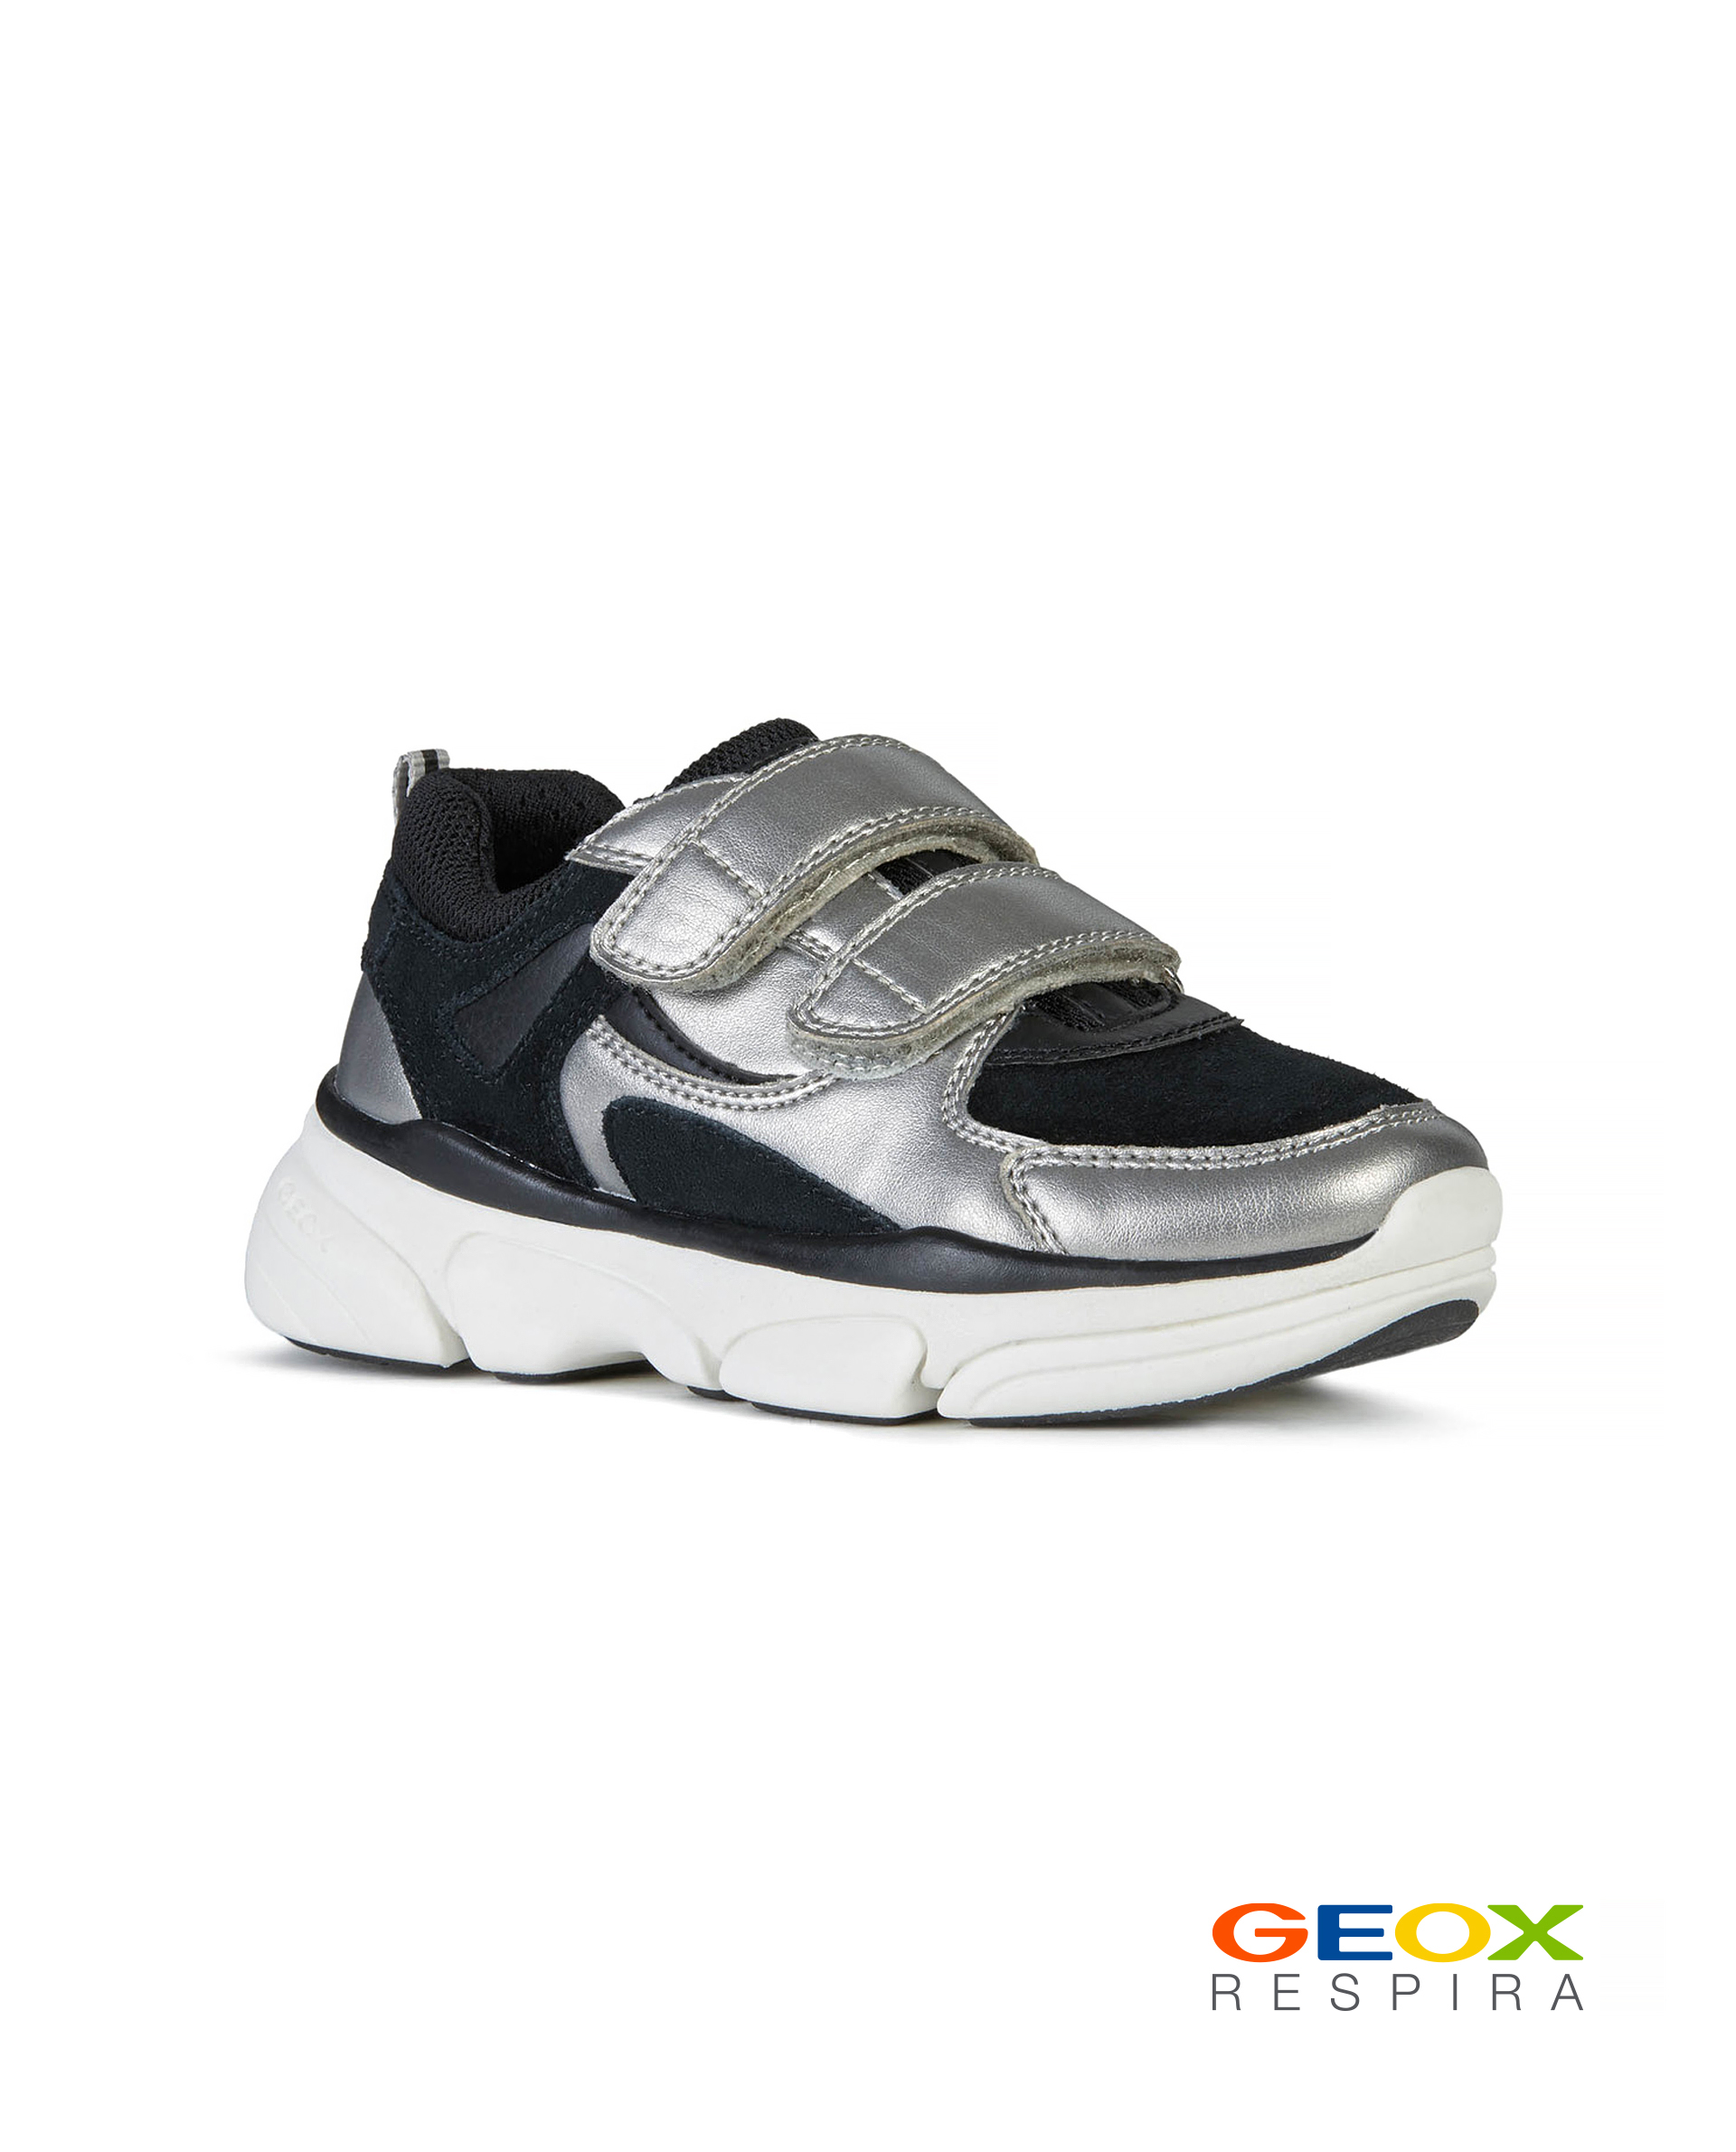 Черные кроссовки Geox с серебристыми вставками J02BGELAJ22C1363, размер 38, цвет черный